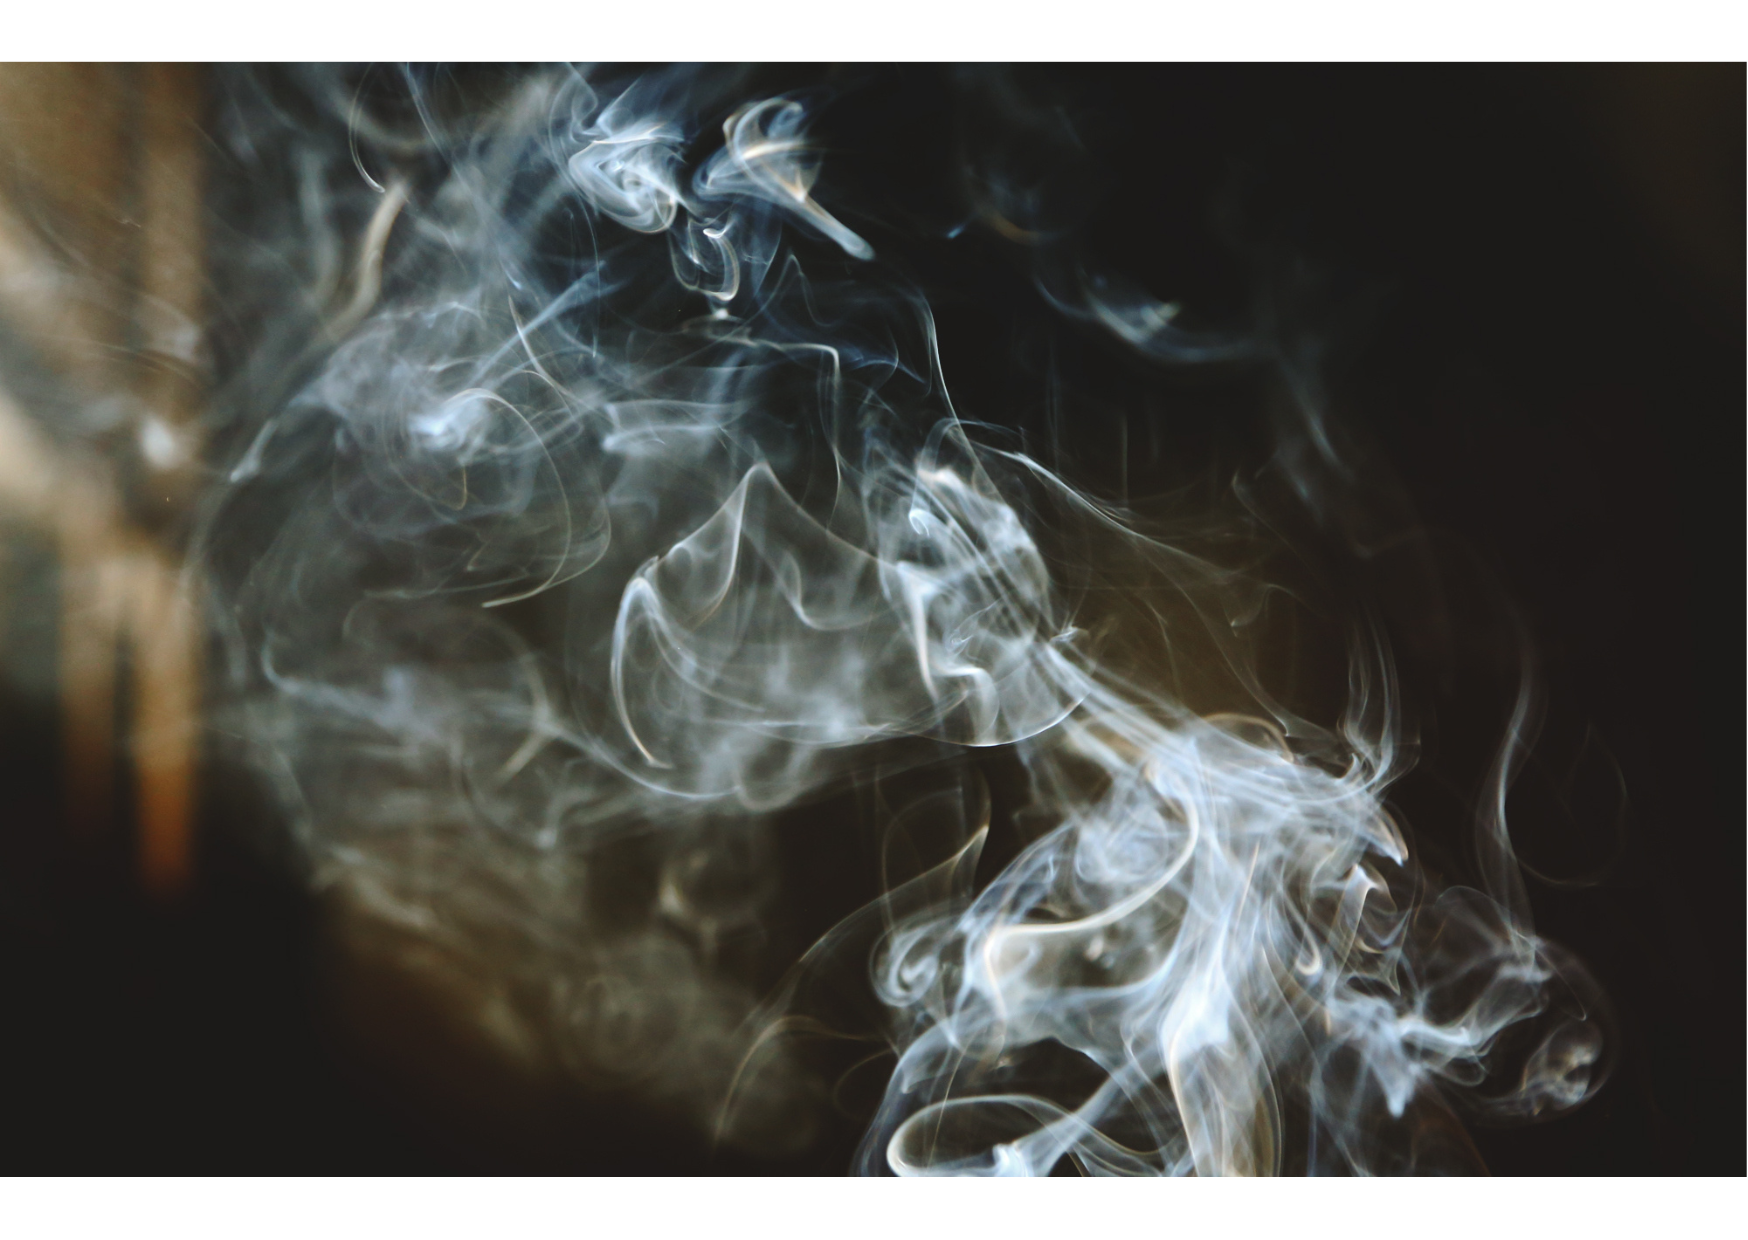 Vill Philip Morris verkligen skapa en rökfri framtid?